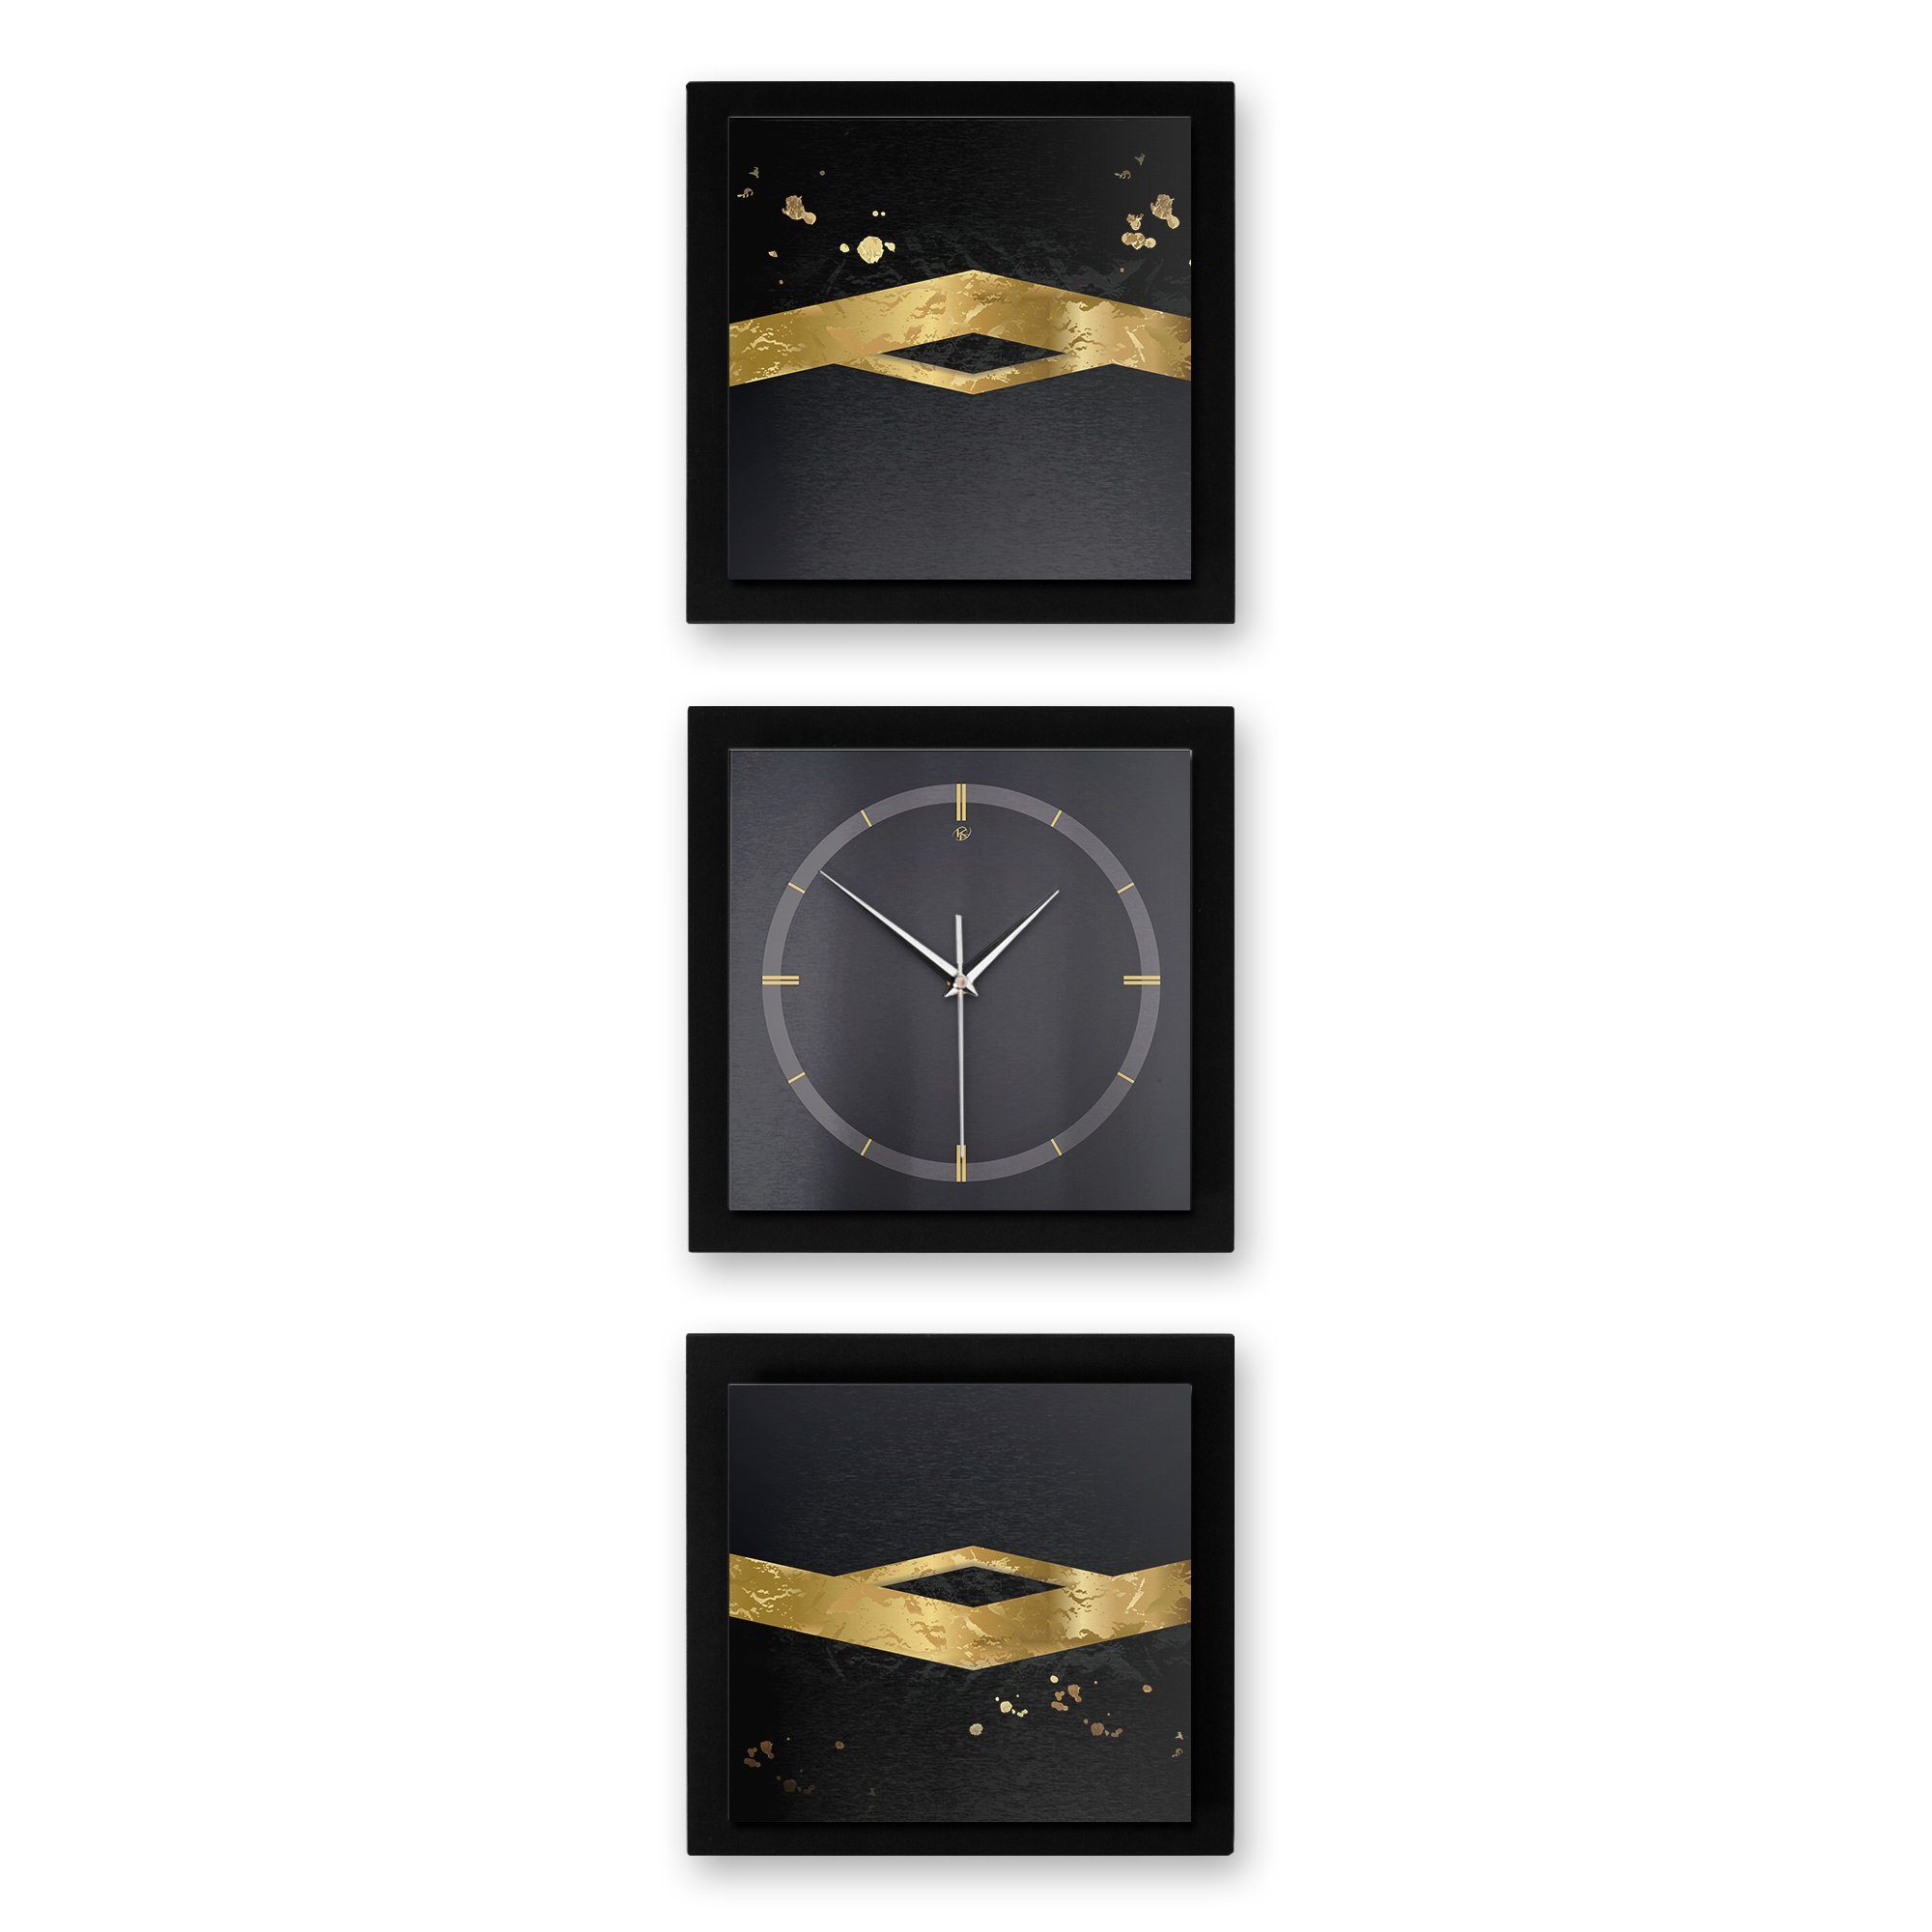 Kreative Feder Wanduhr Gold on Black (ohne Ticken; Funk- oder Quarzuhrwerk; elegant, außergewöhnlich, modern) groß (150x50cm)